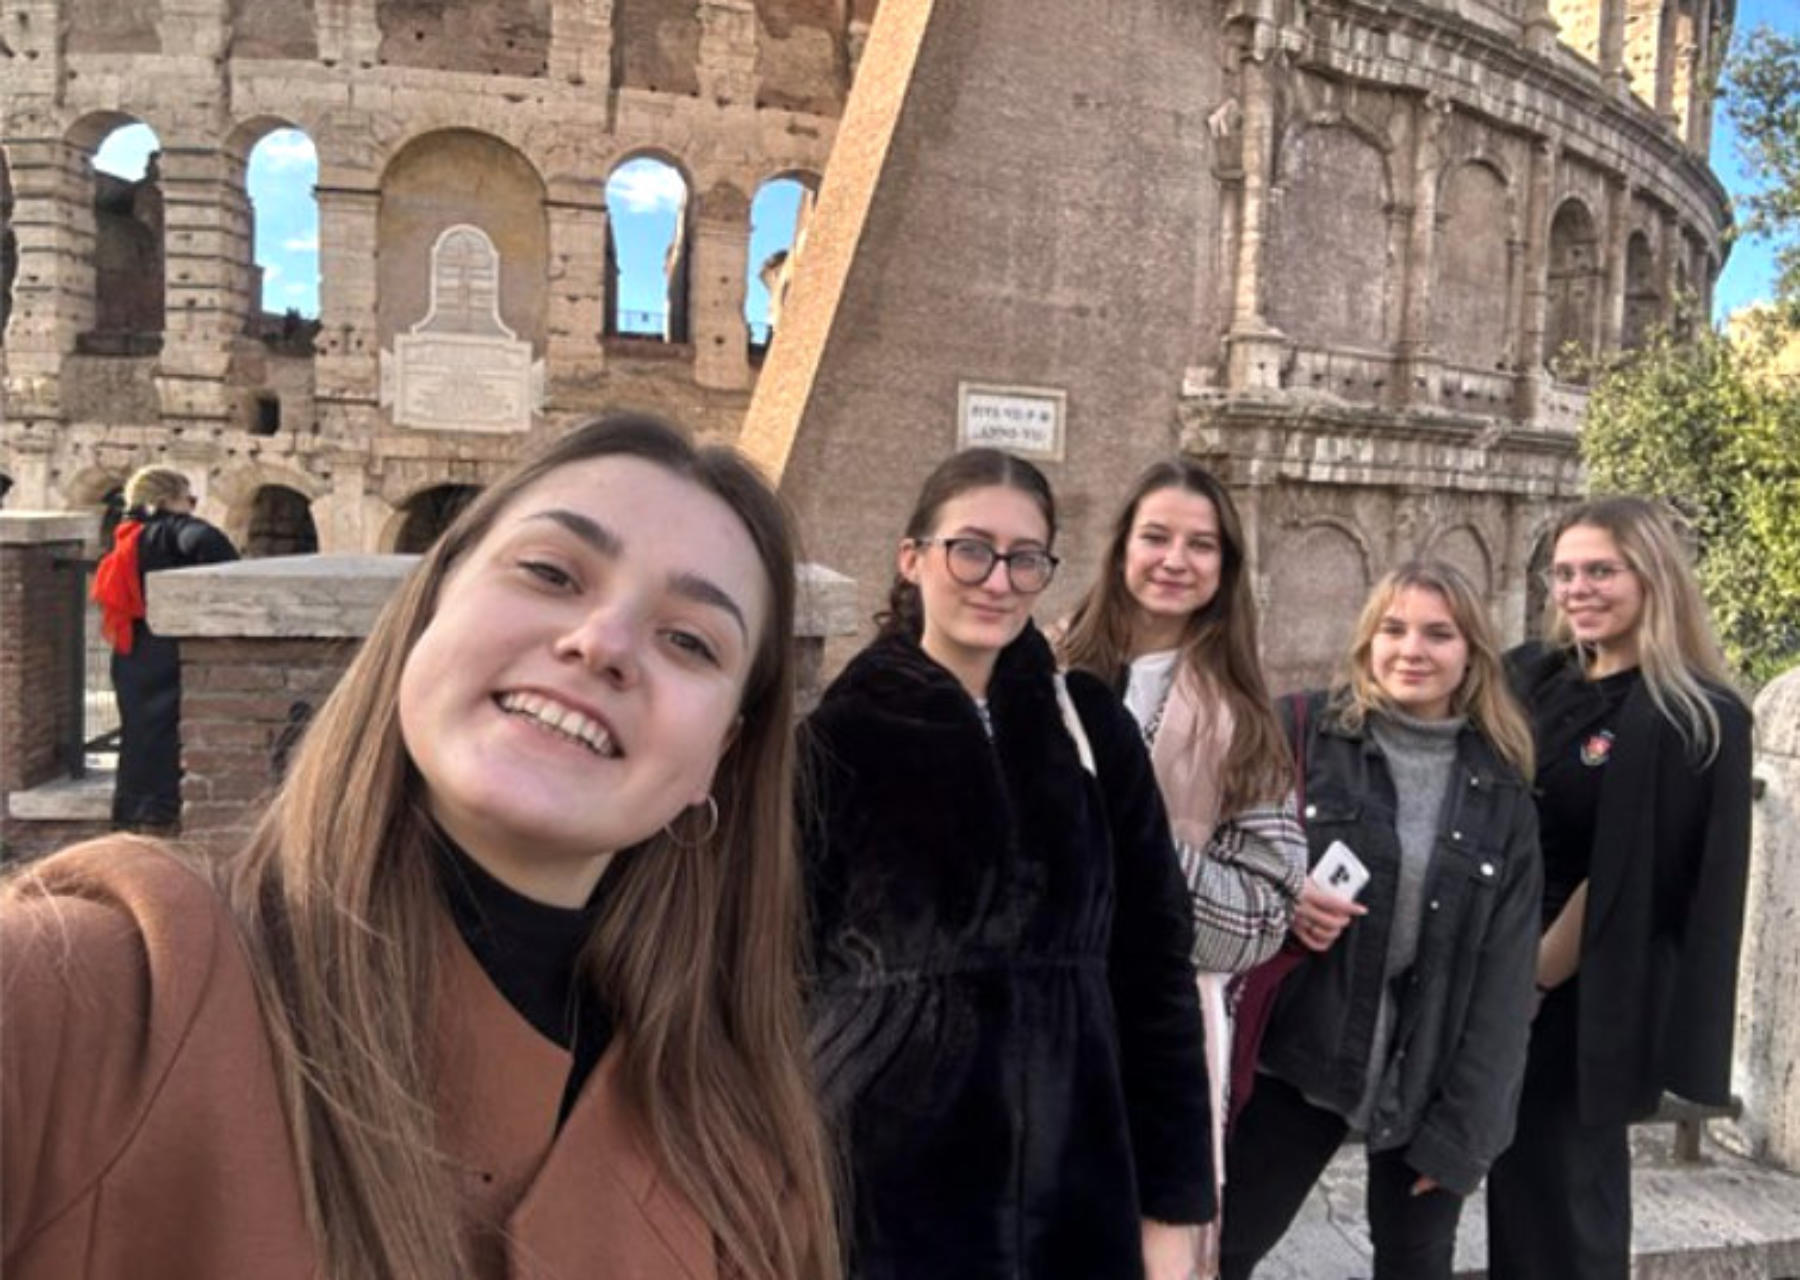 Będąc w Rzymie, studentki z Litwy miały okazję podziwiać ogrom i majestat Koloseum oraz obejrzeć wiele innych wspaniałych zabytków architektury w stolicy Włoch.